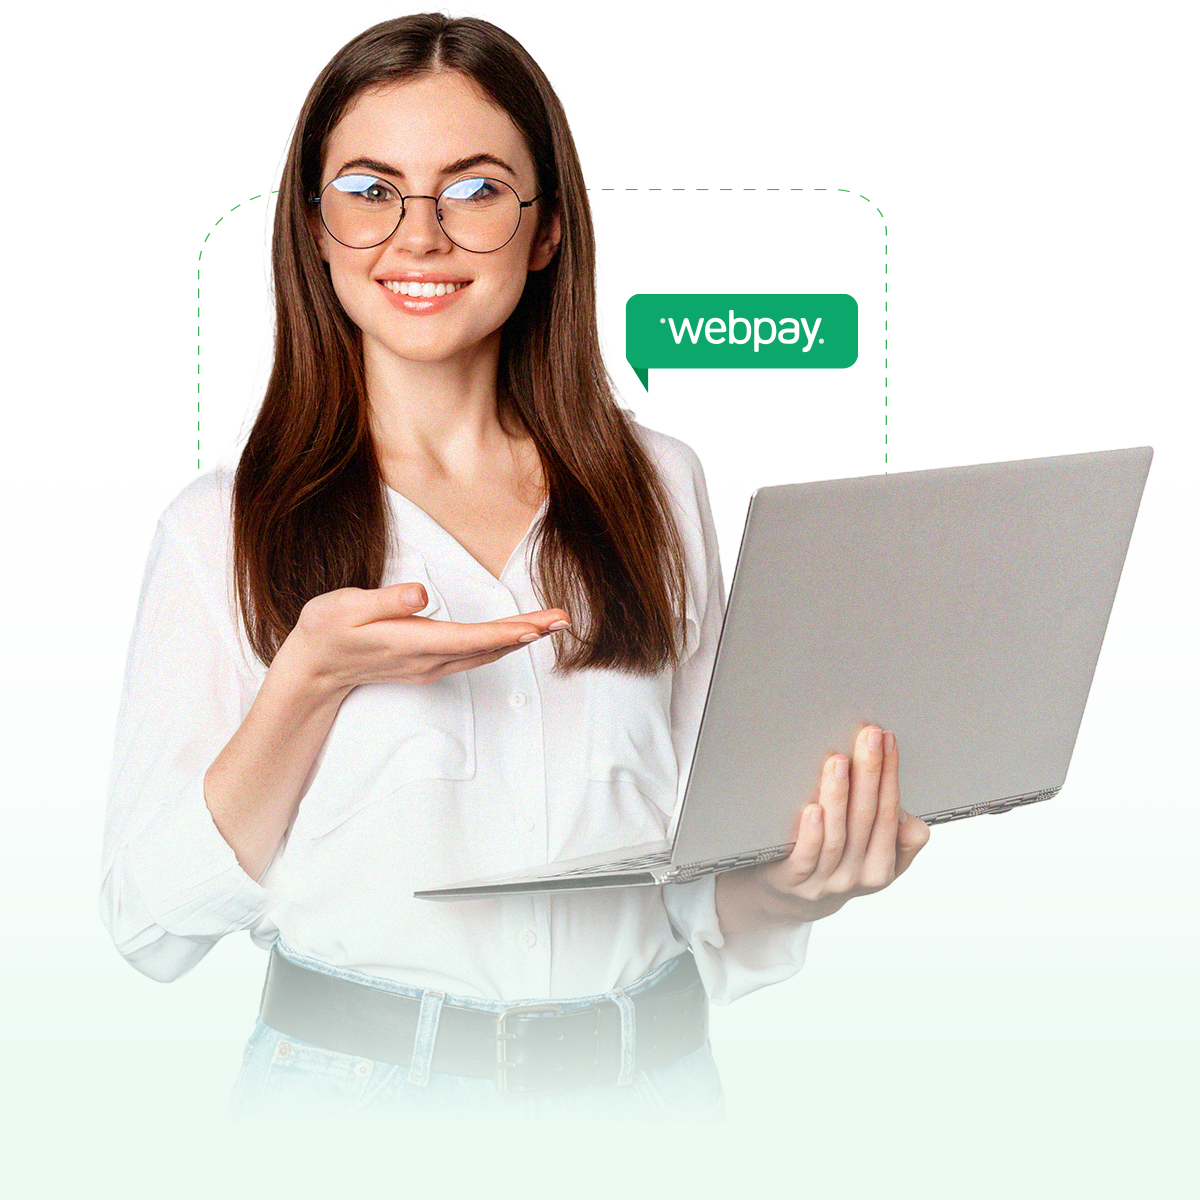 Mujer joven sonriendo y apuntando a su Notebook. En la imagen se sobreimprime el logo de Webpay.